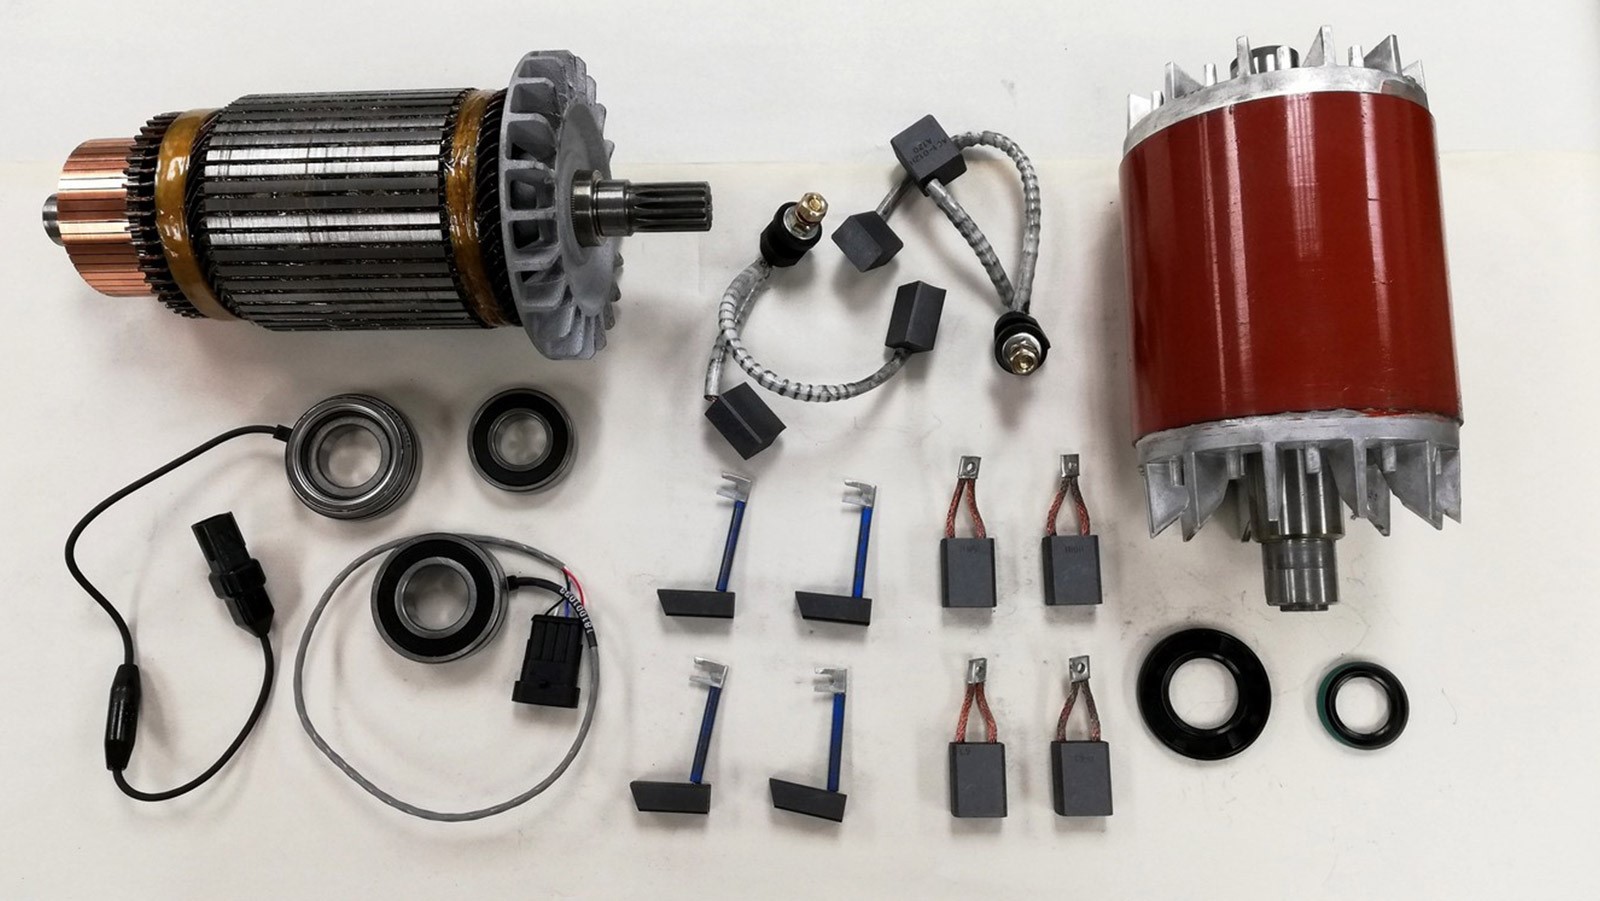 Forklift rebuilt motors from Prime Mover brand